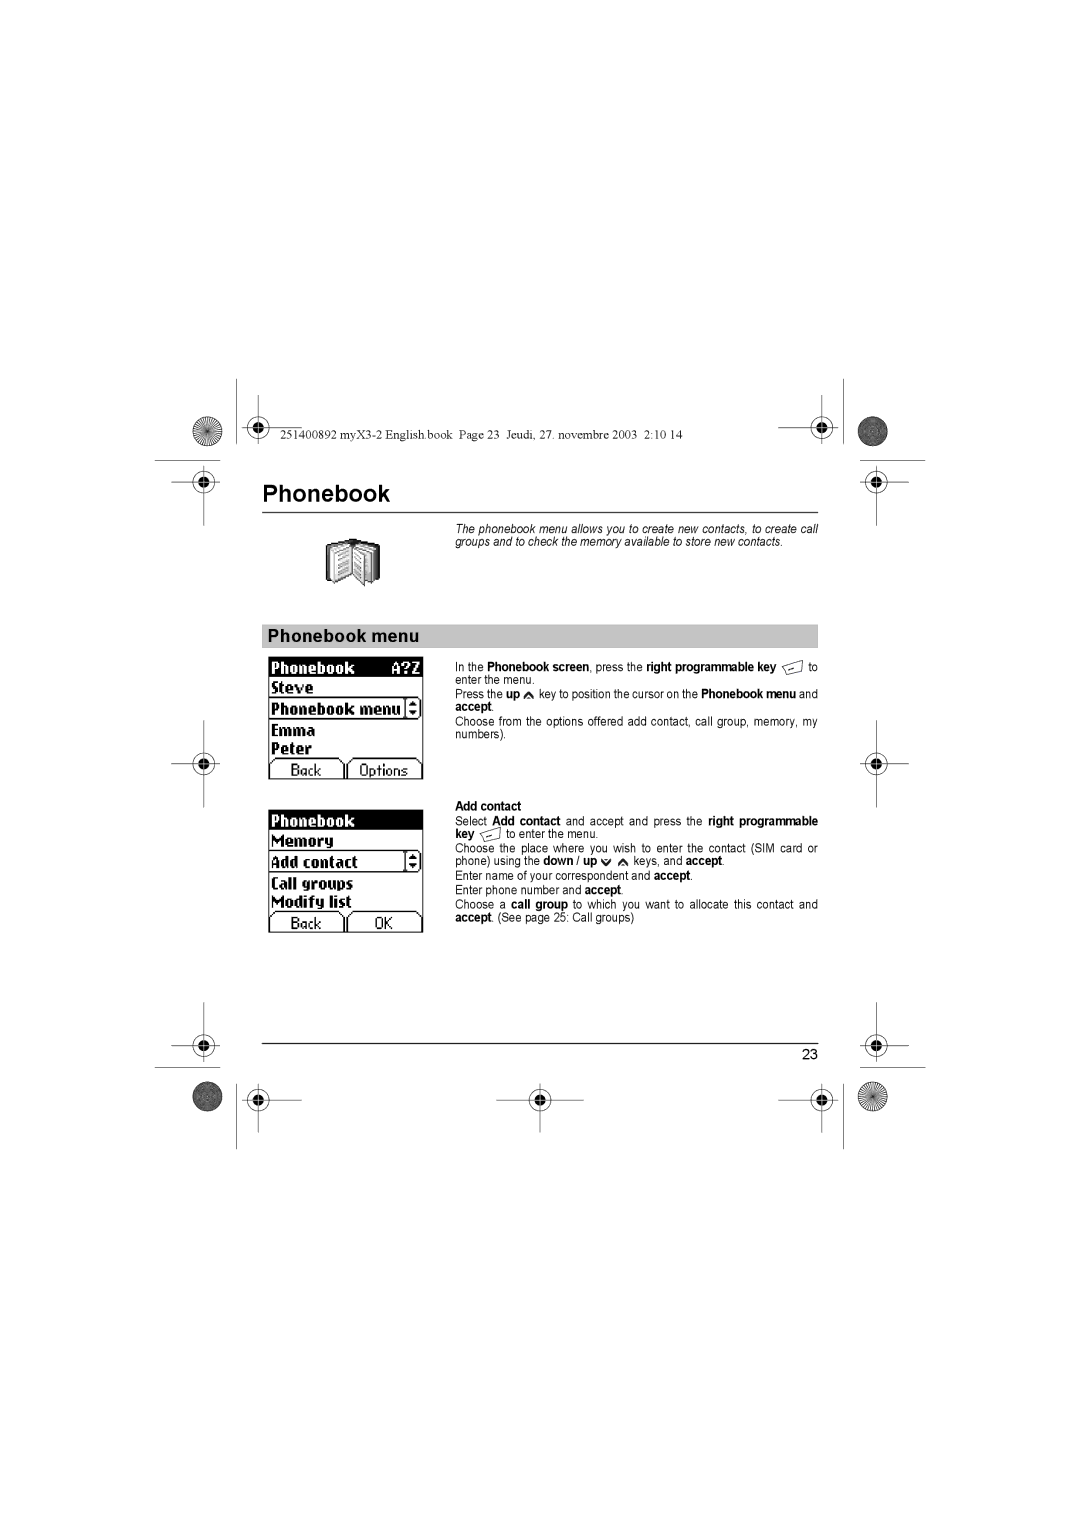 Sagem myX3-2 manual Phonebook menu, Add contact 